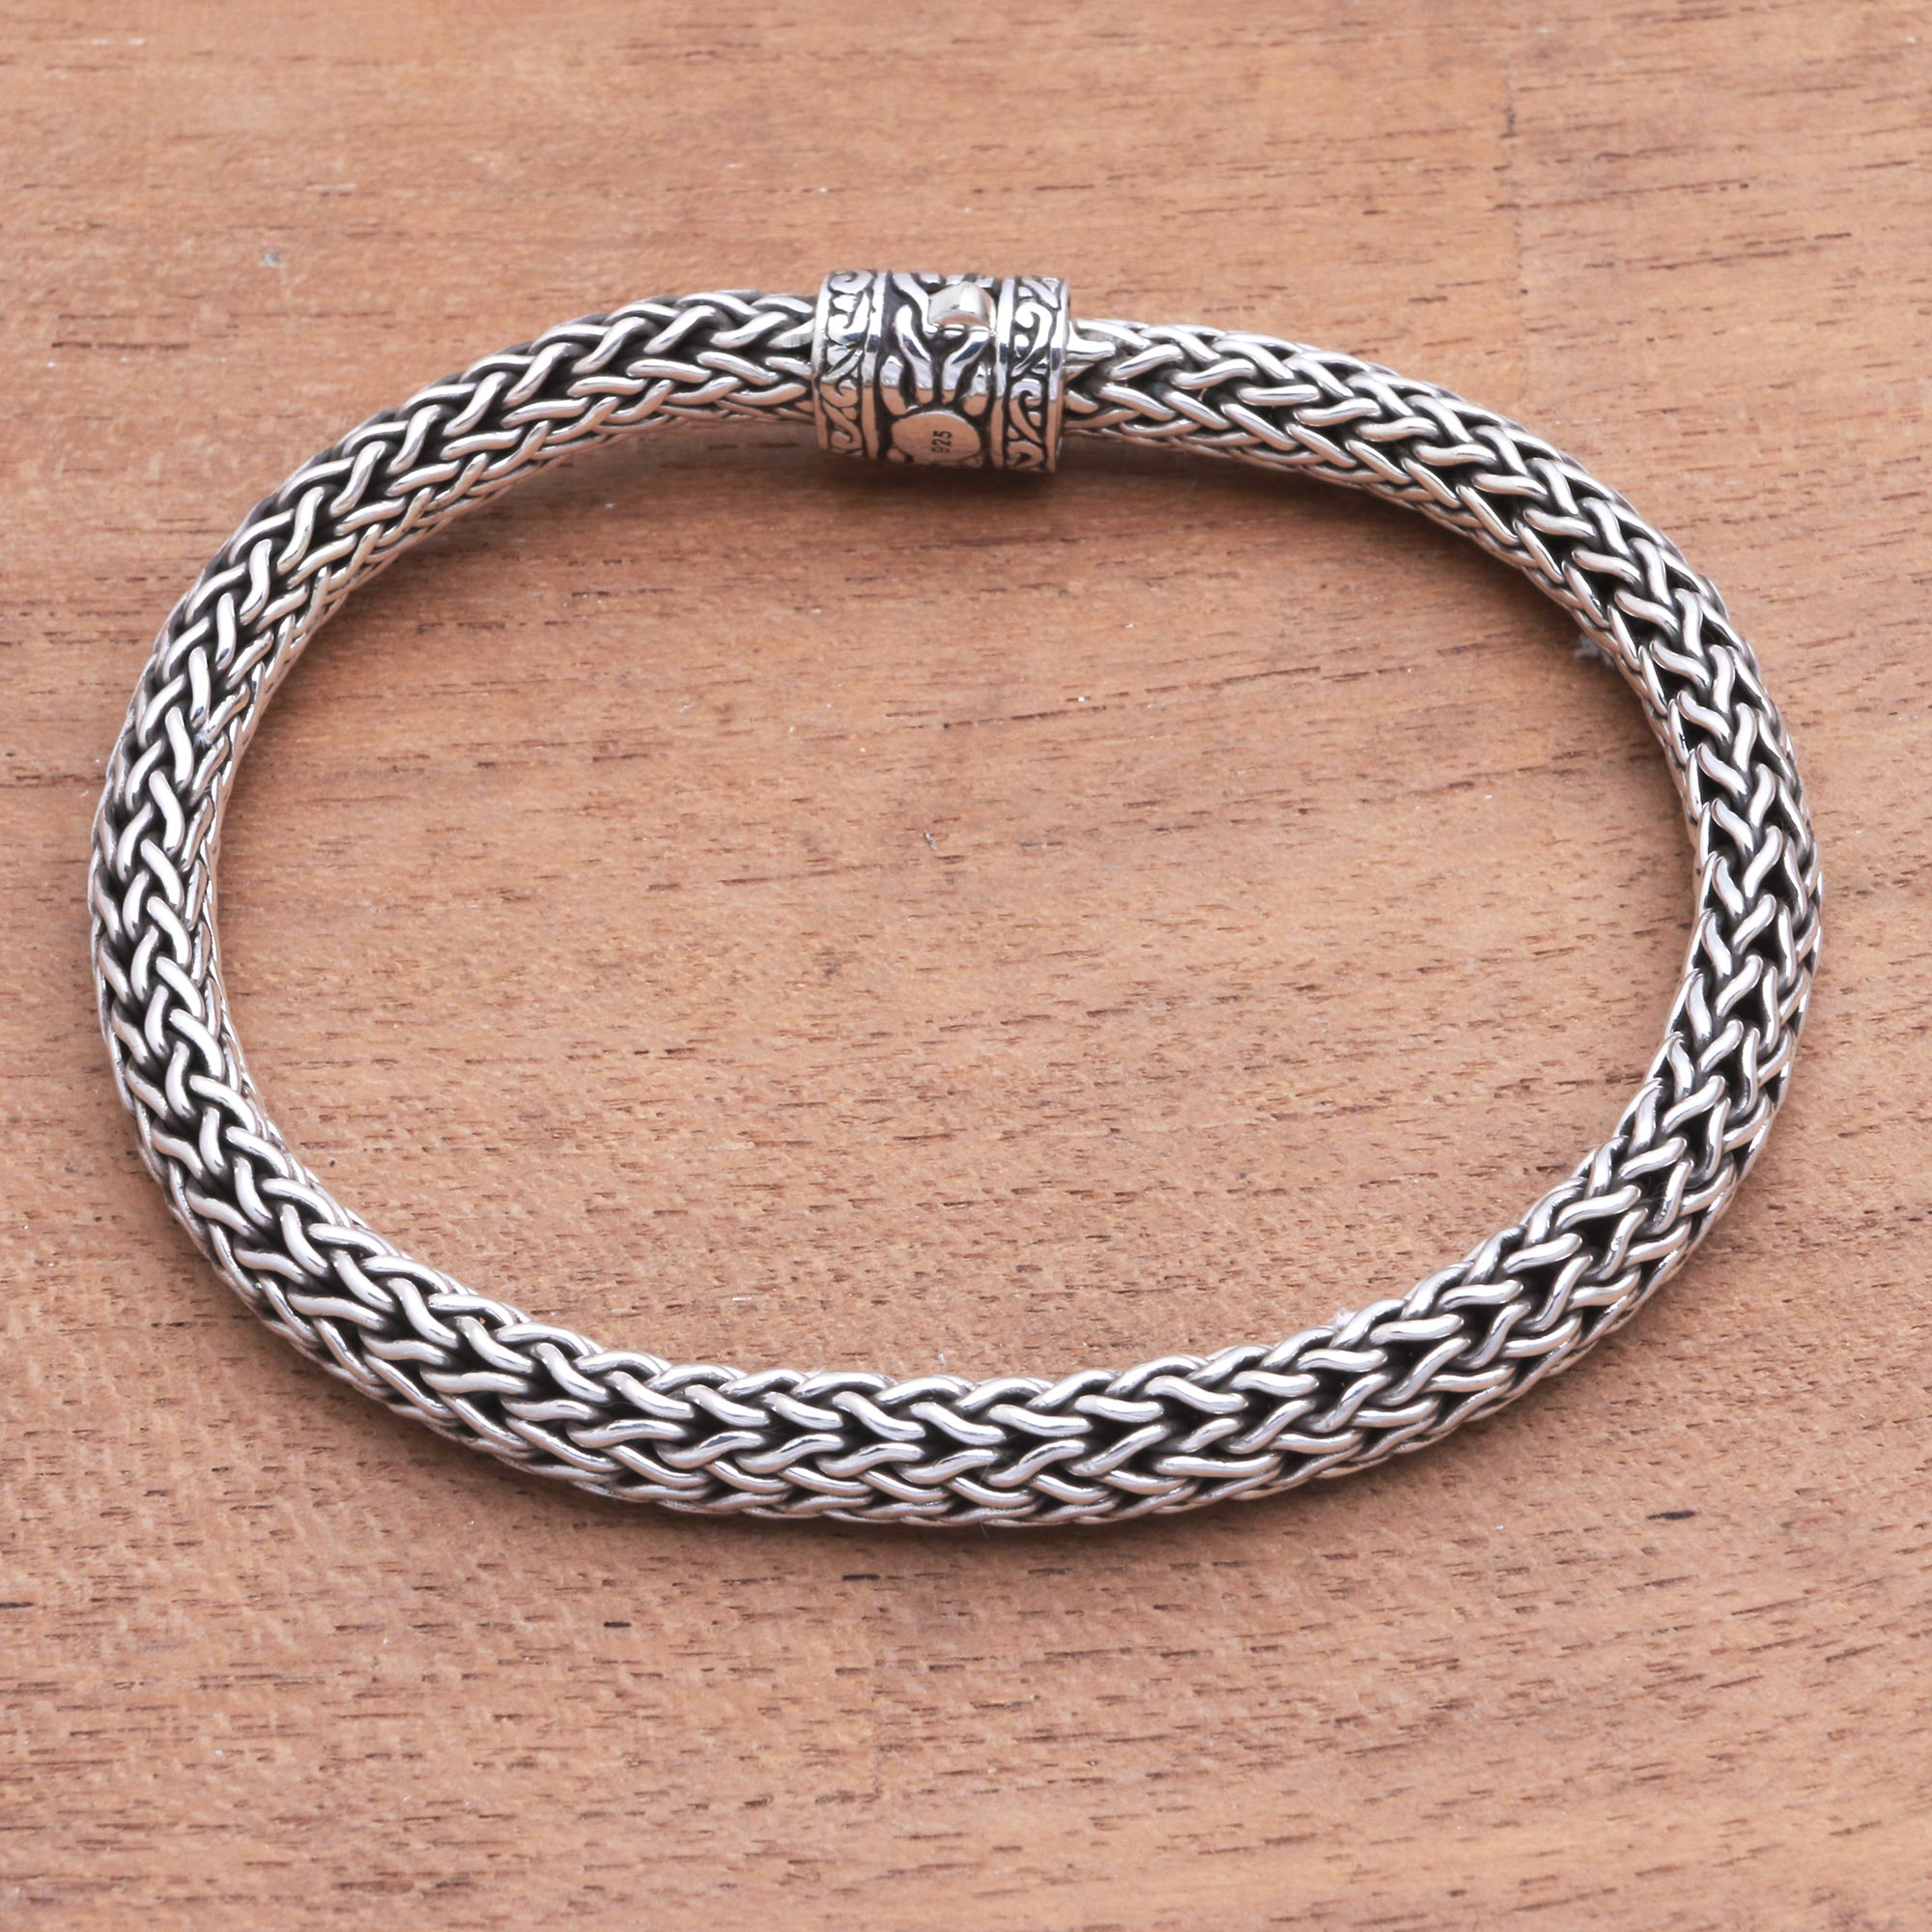 Foxtail chain bracelet mtp 1183a 7a